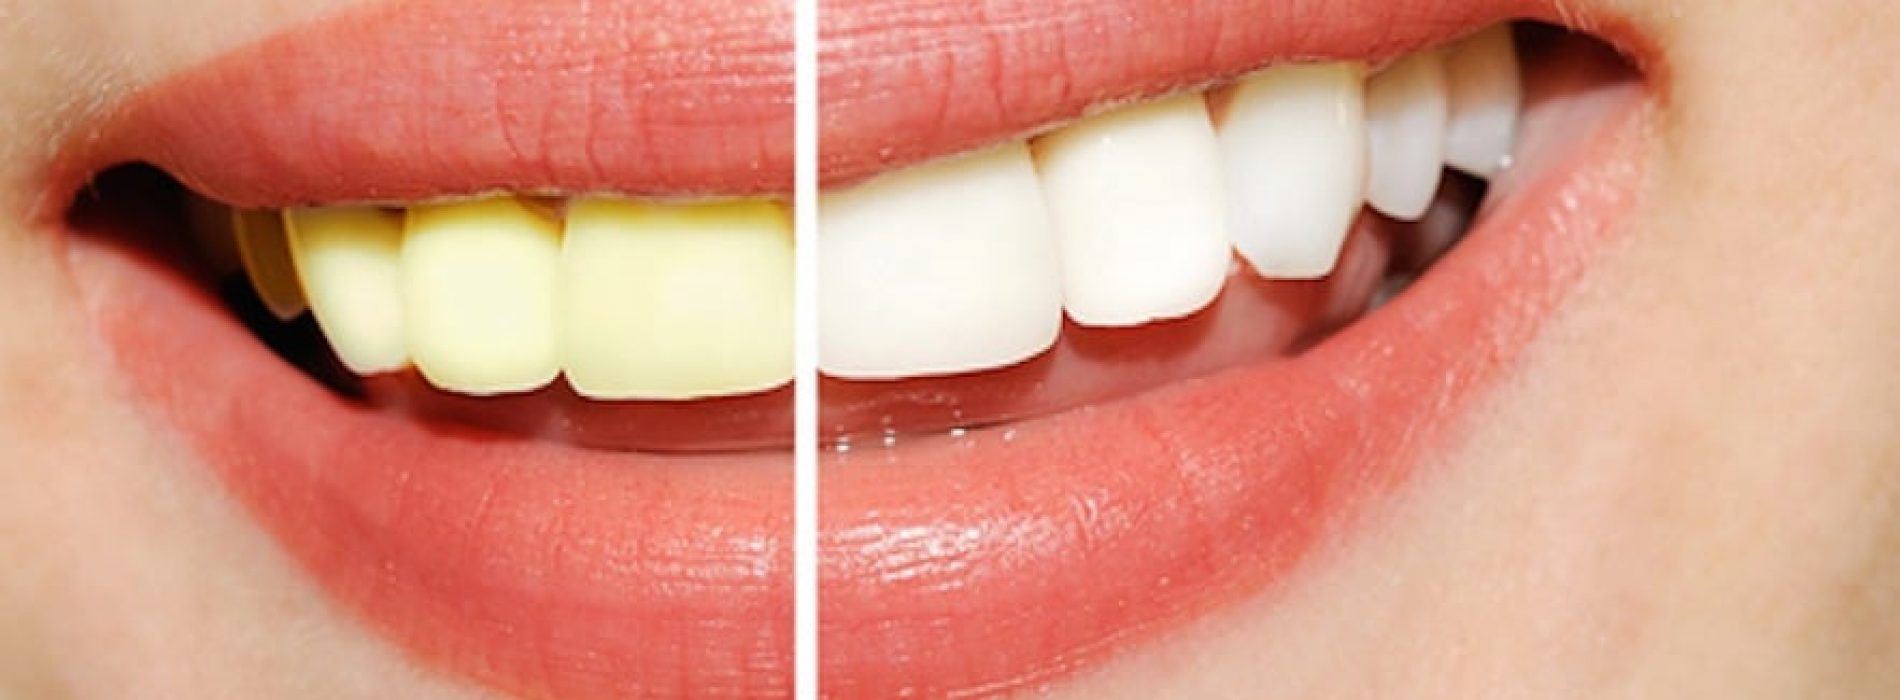 Een stralende witte lach zonder je tanden te bleken? Met DEZE tips gaat dat lukken!